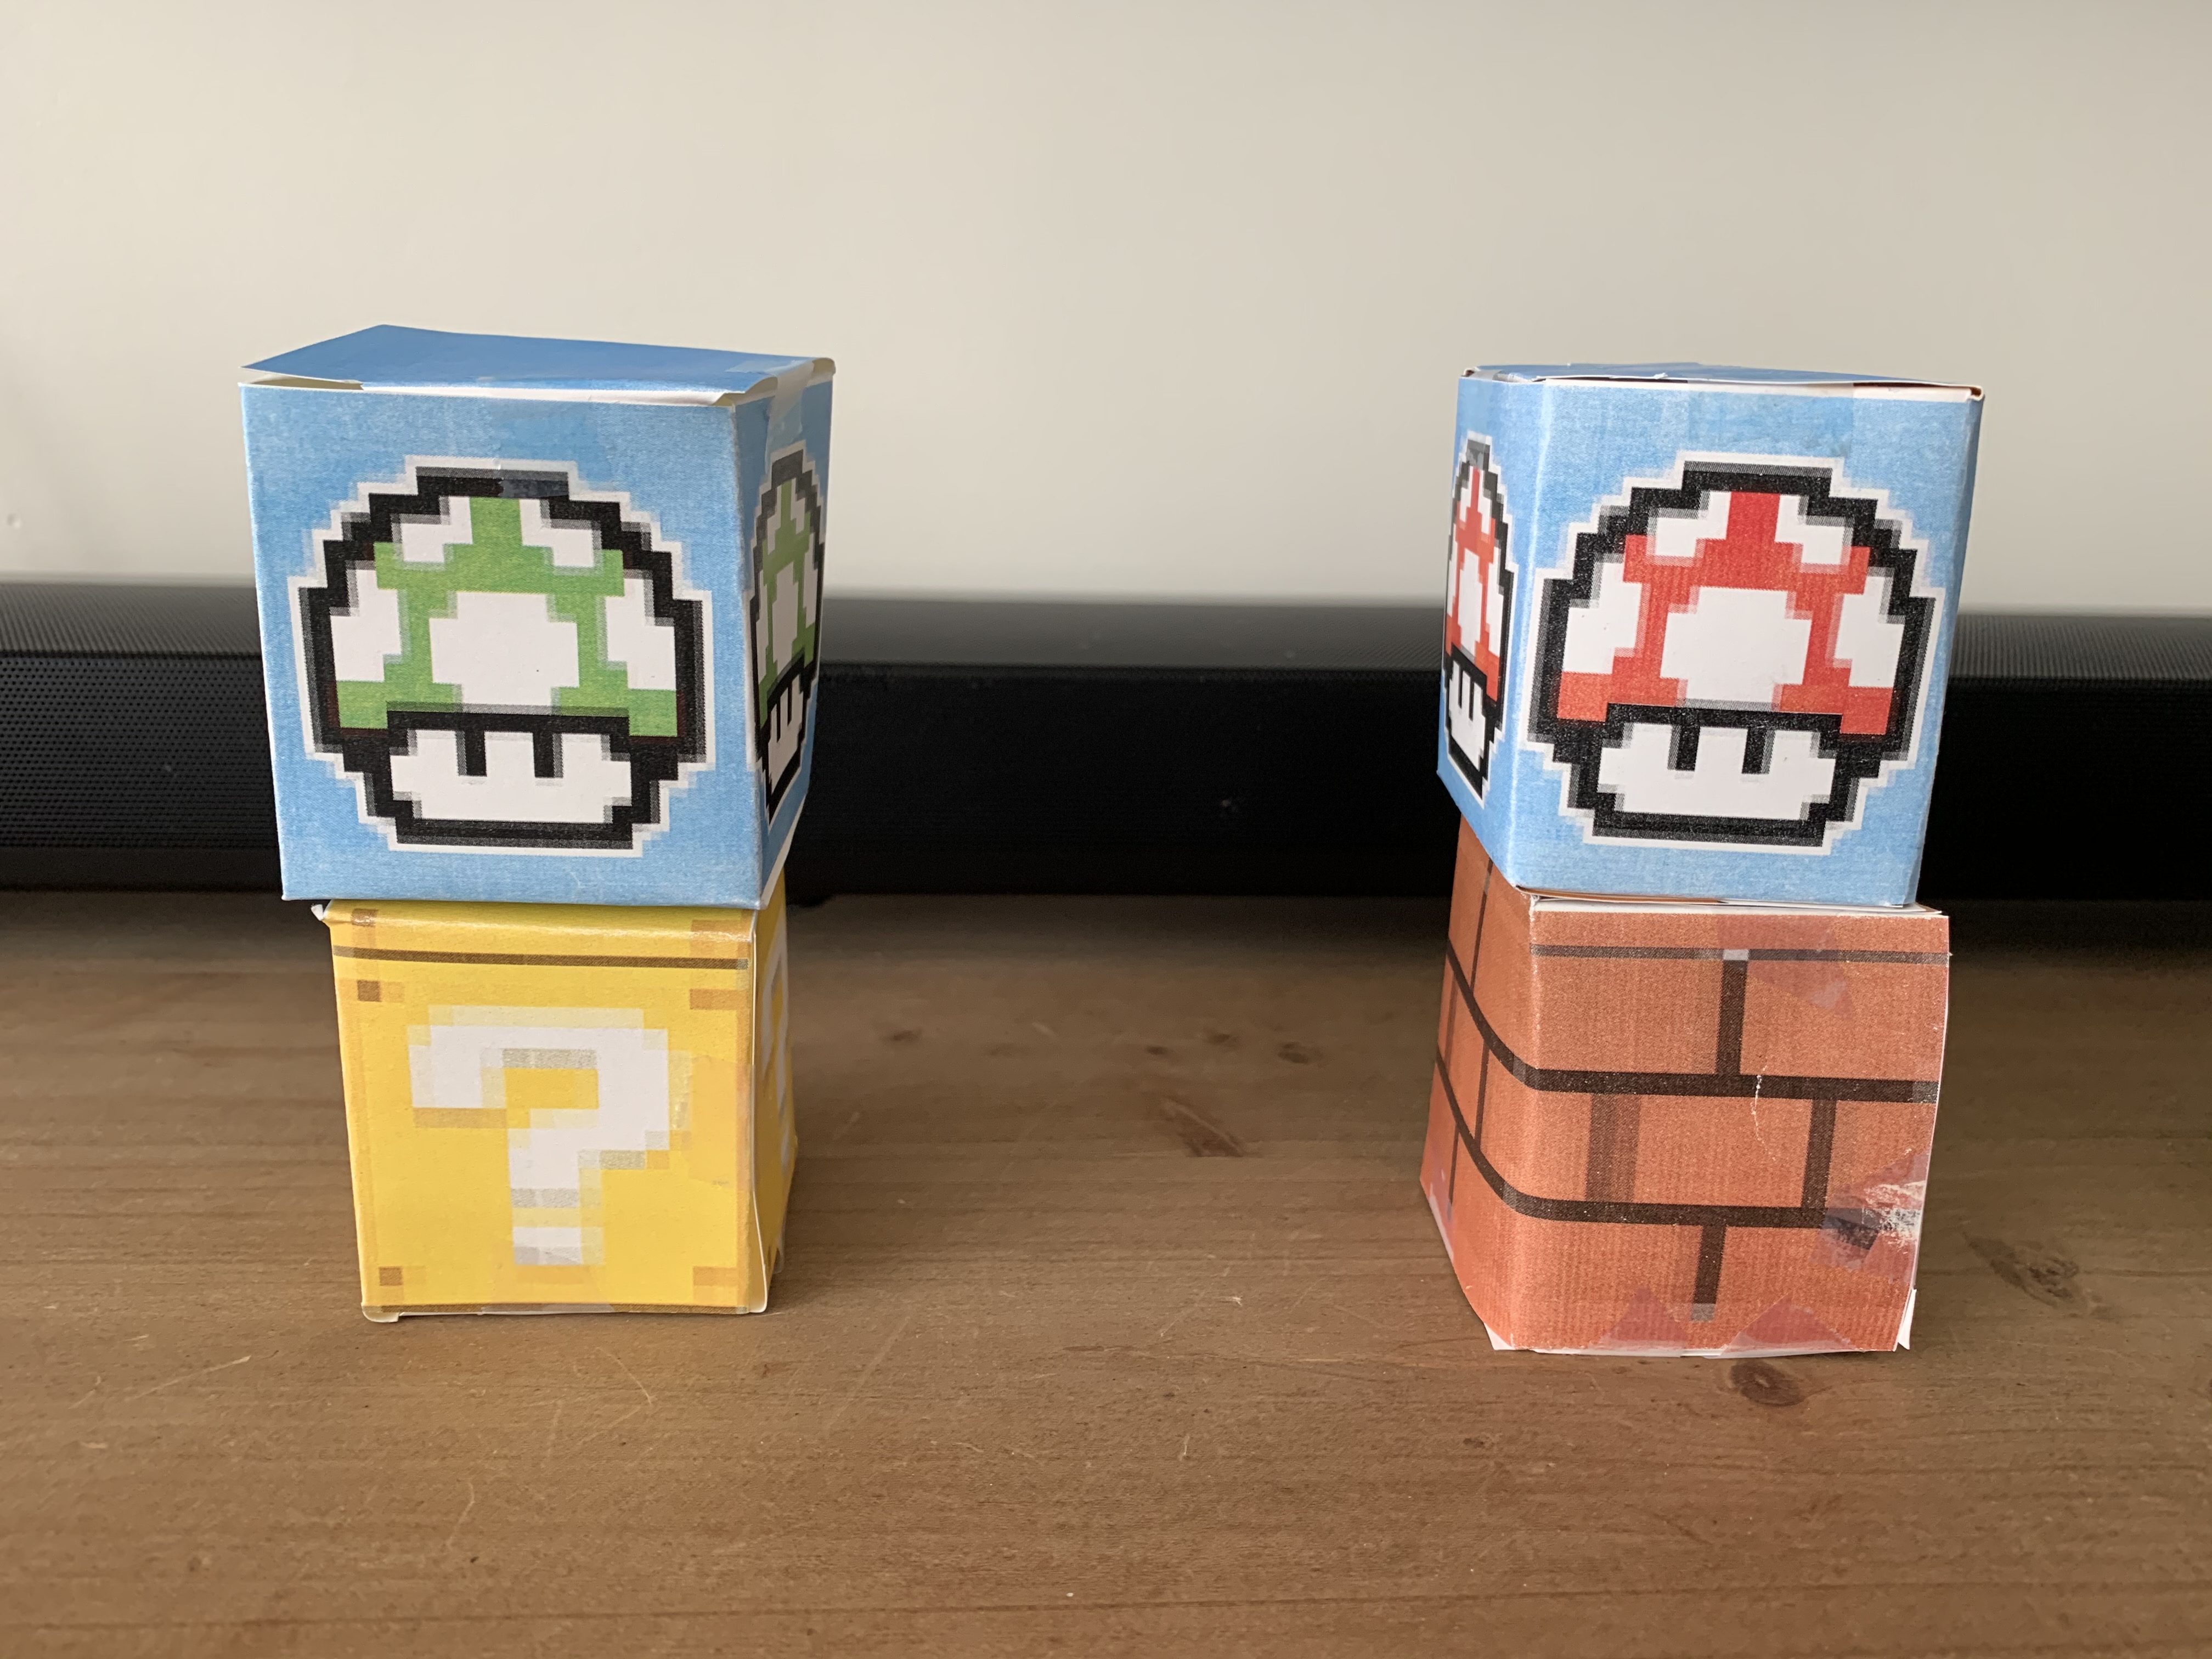 Mario Boxes